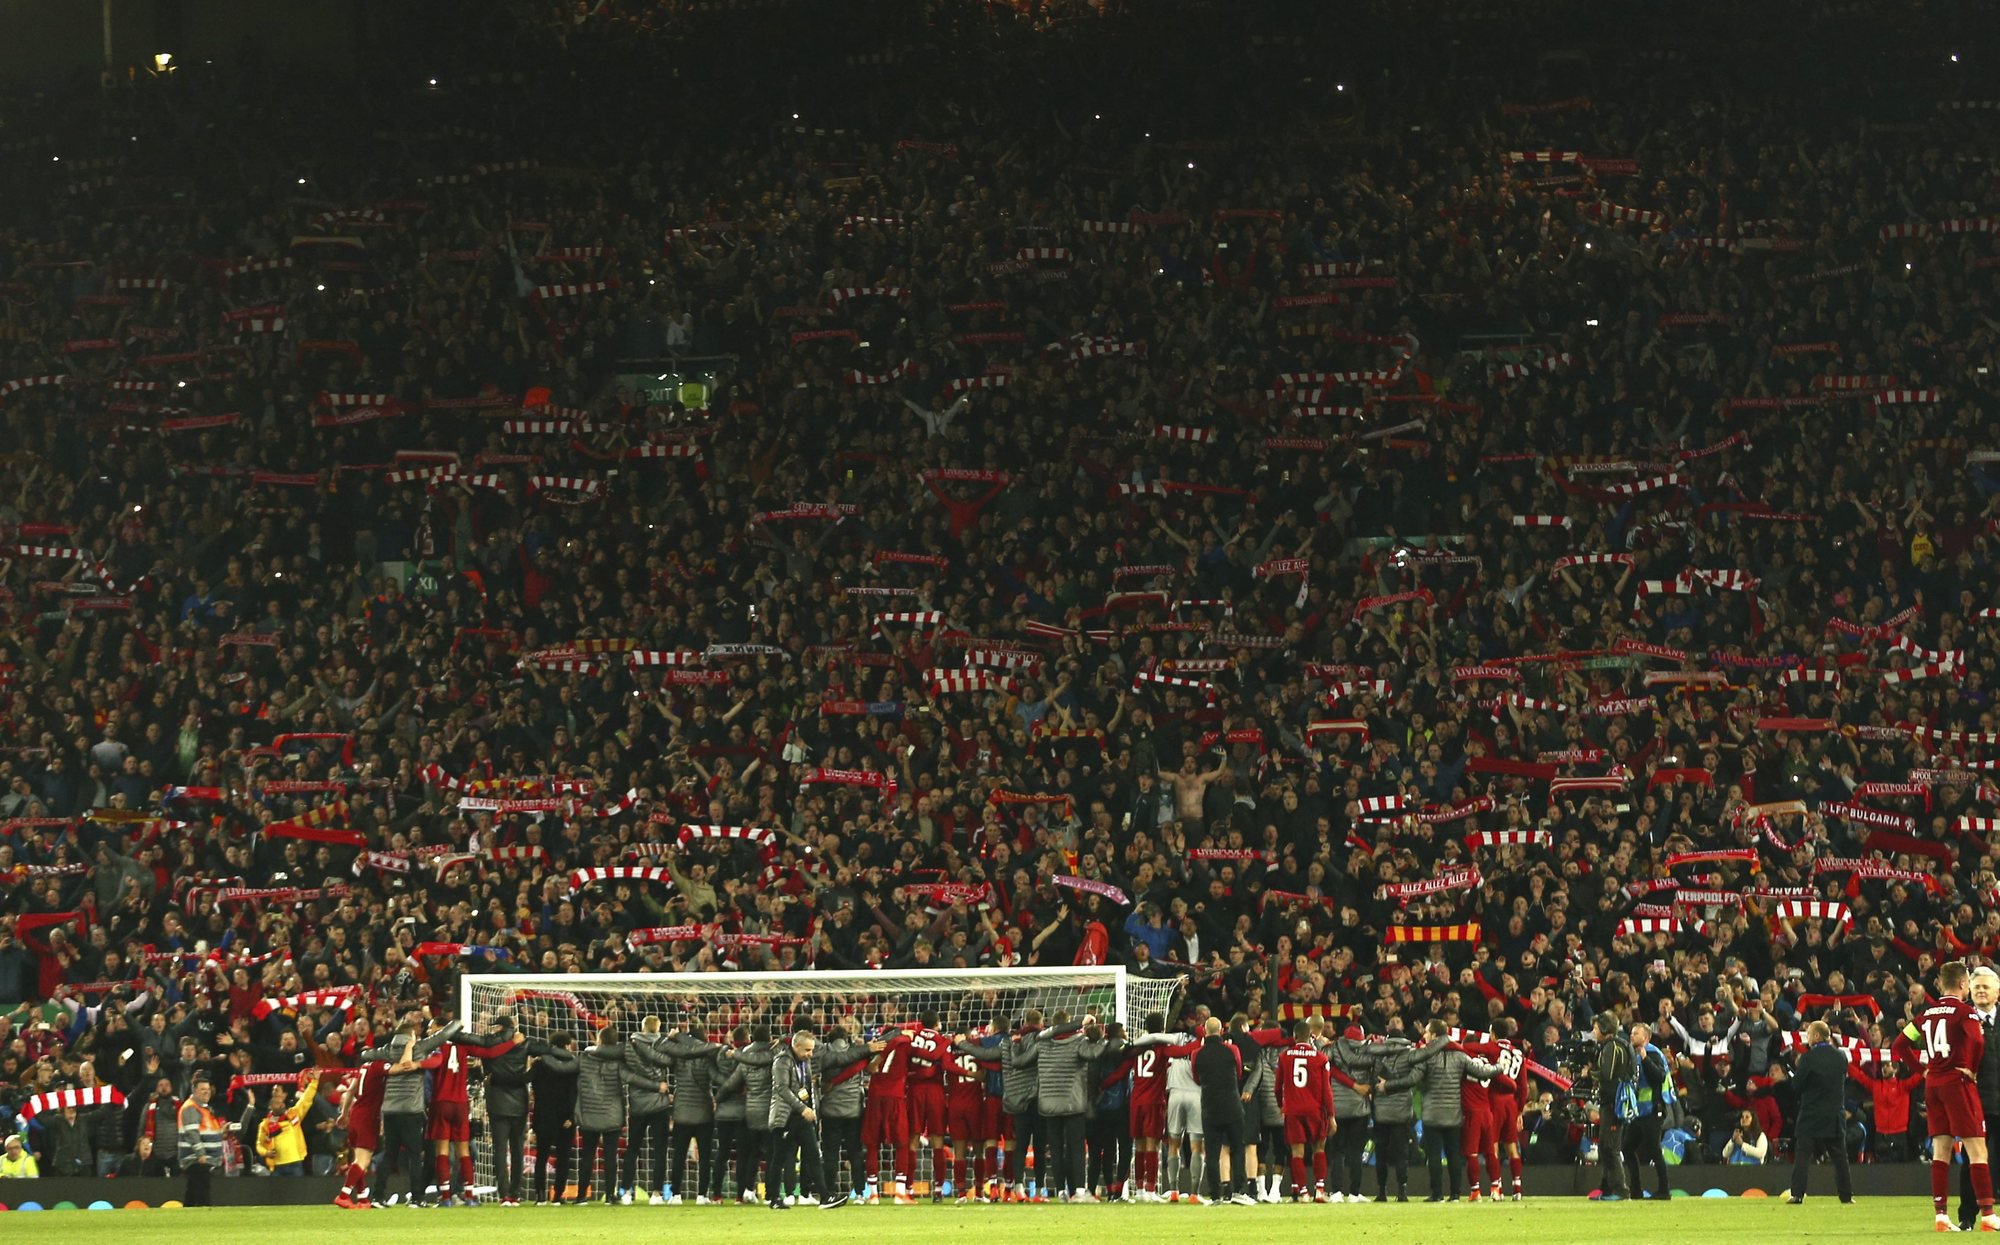 "You'll never walk alone" chantent les fans de Liverpool aux héros de ce mardi 7 mai 2019.